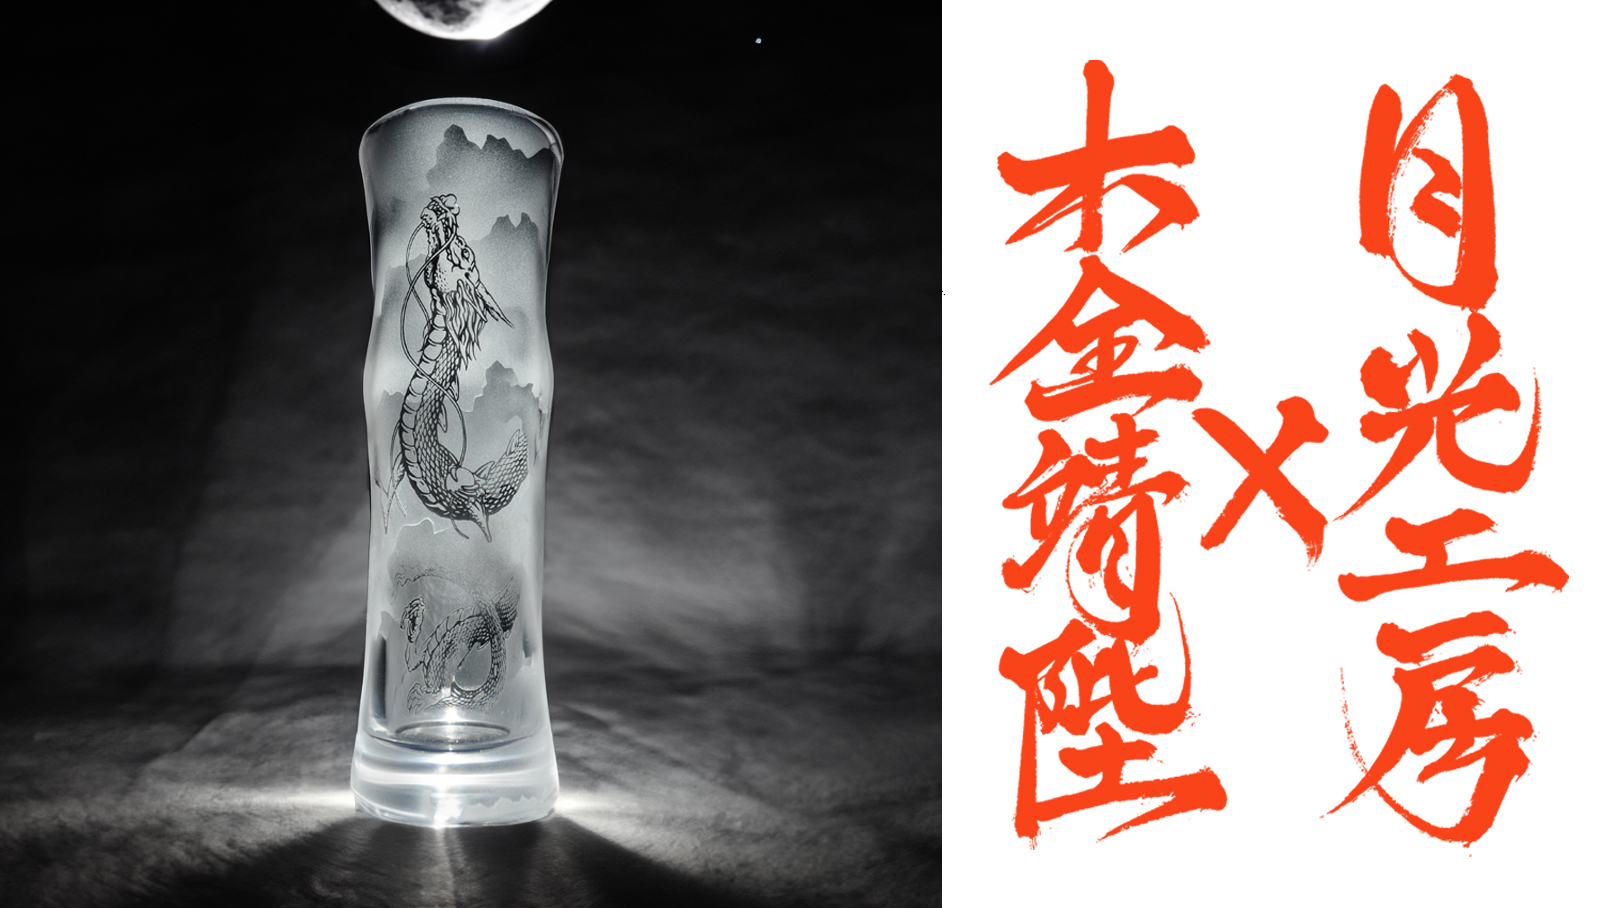 月光工房が手がける「辰年」コラボグラスがMakuakeに登場！
グラスに生命を宿す技法で木全靖陛氏の龍モチーフを立体的に表現